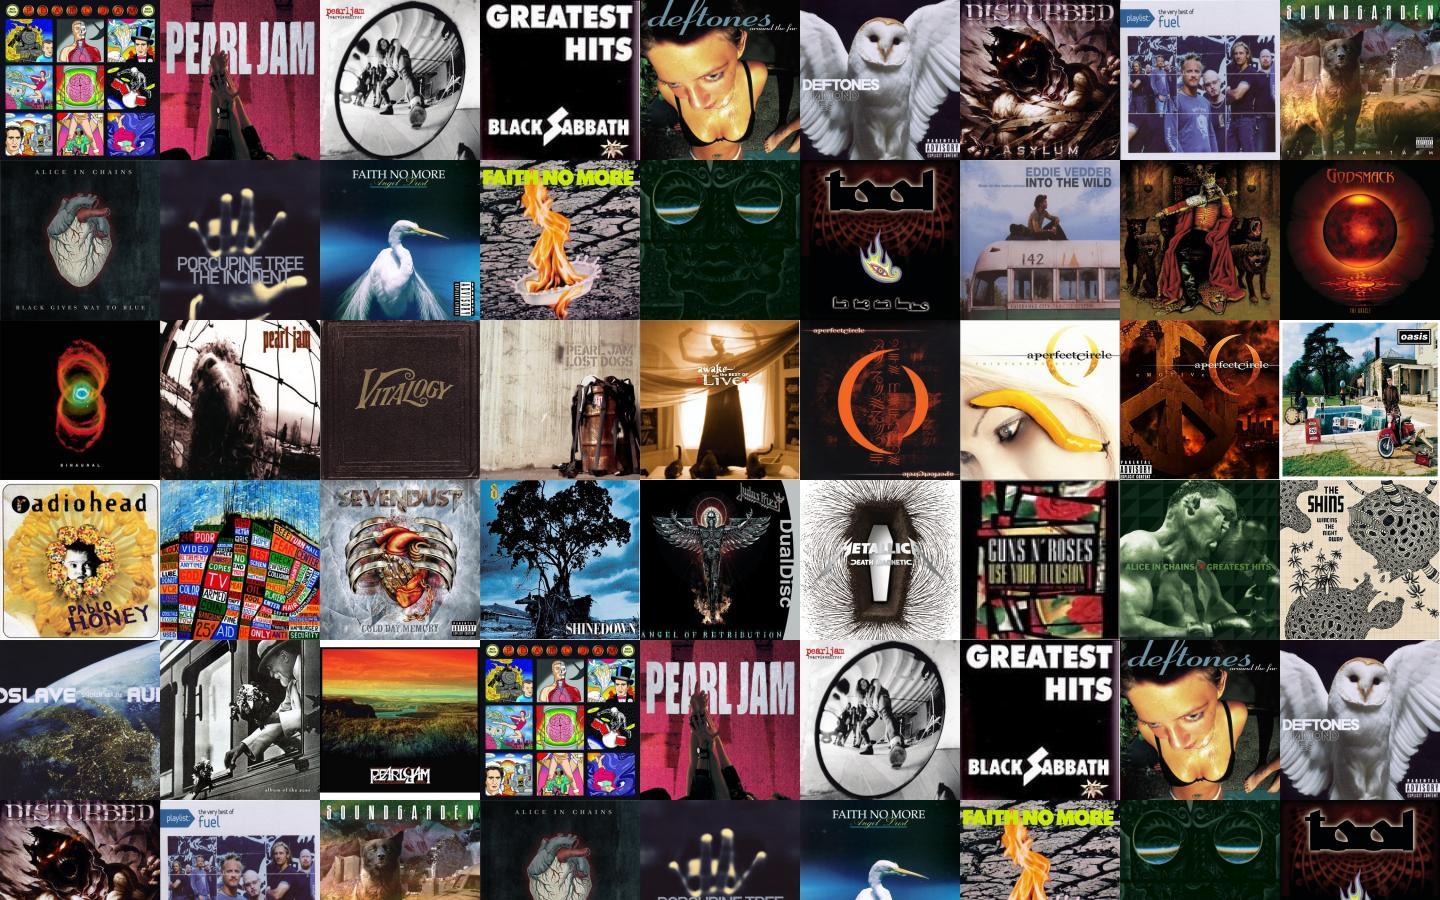 Pearl Jam Desktop Wallpaper